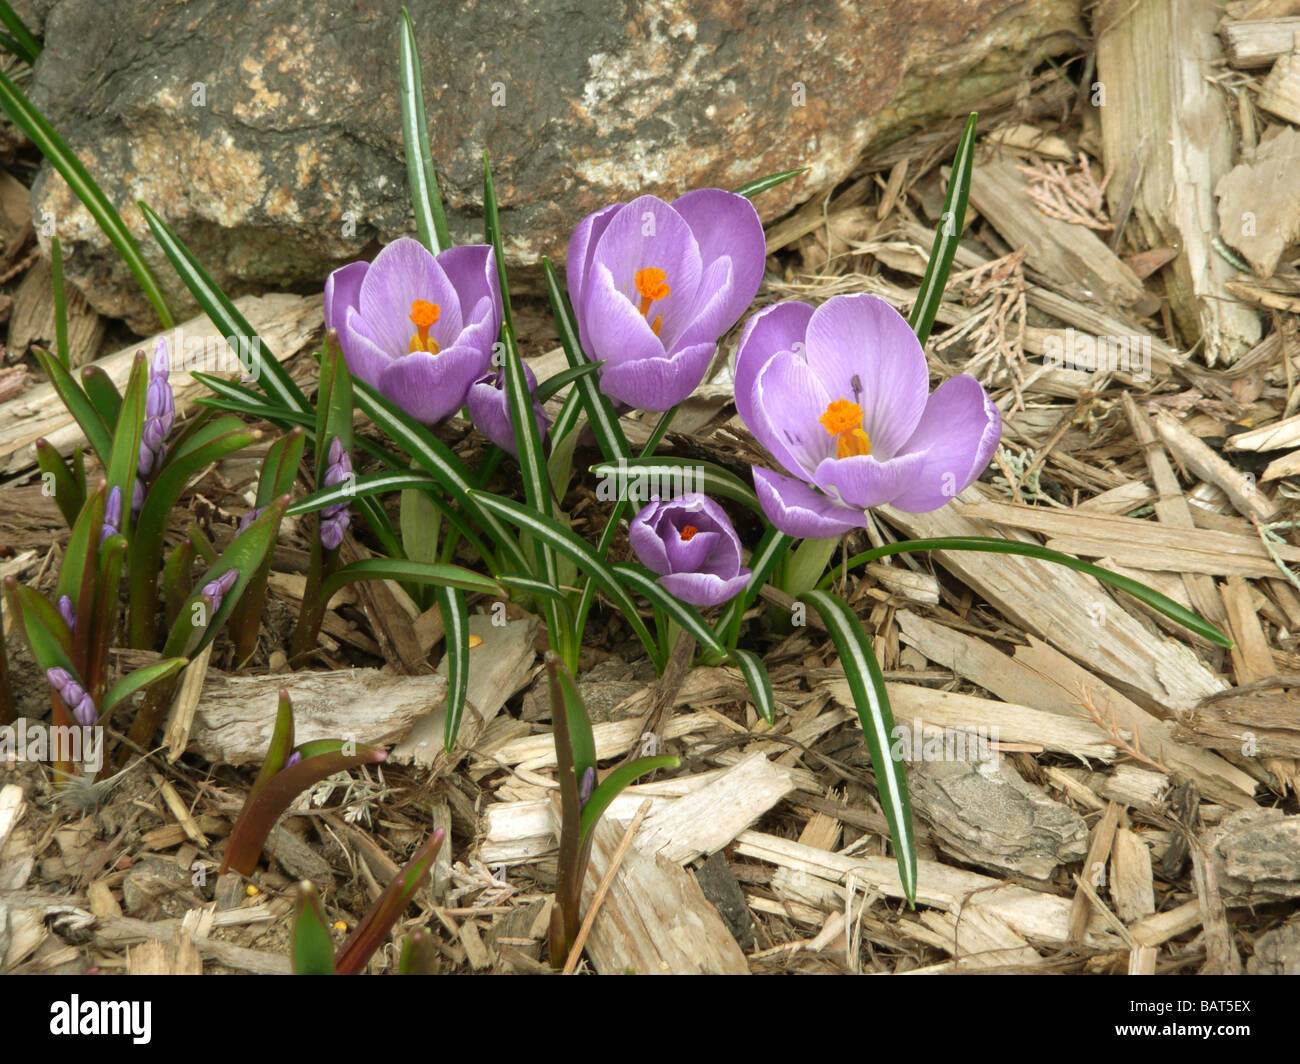 Un mazzetto di croco viola con orange stami in un letto giardino di trucioli di legno. I fiori sono accanto a una roccia. Foto Stock